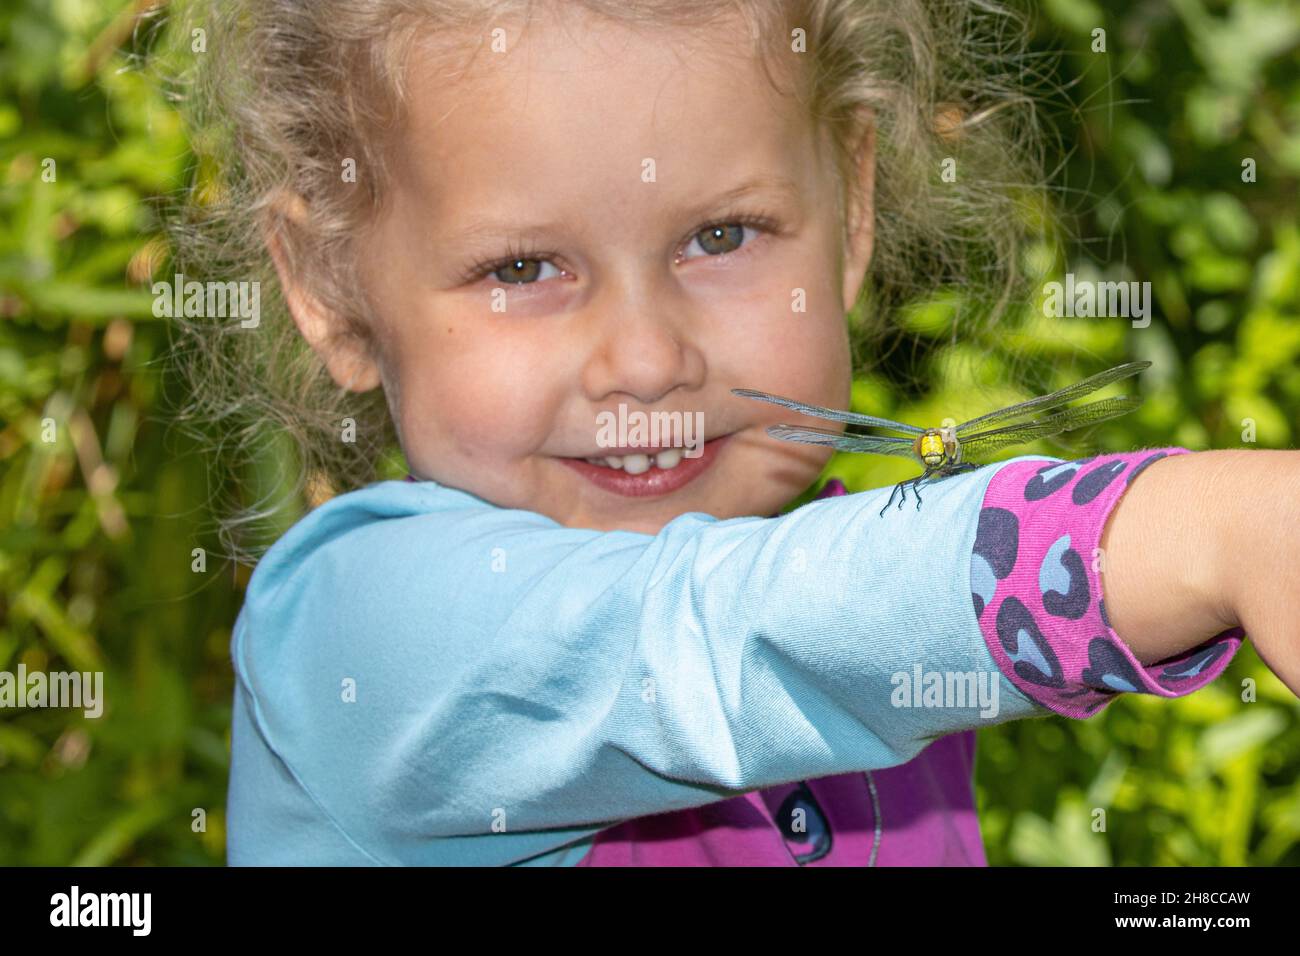 Blaugrüner Darner, südliche aeshna, südlicher Falkner (Aeshna cyanea), kleines lächelndes Mädchen mit einer Falkerin Libelle auf ihrem Arm, Deutschland Stockfoto